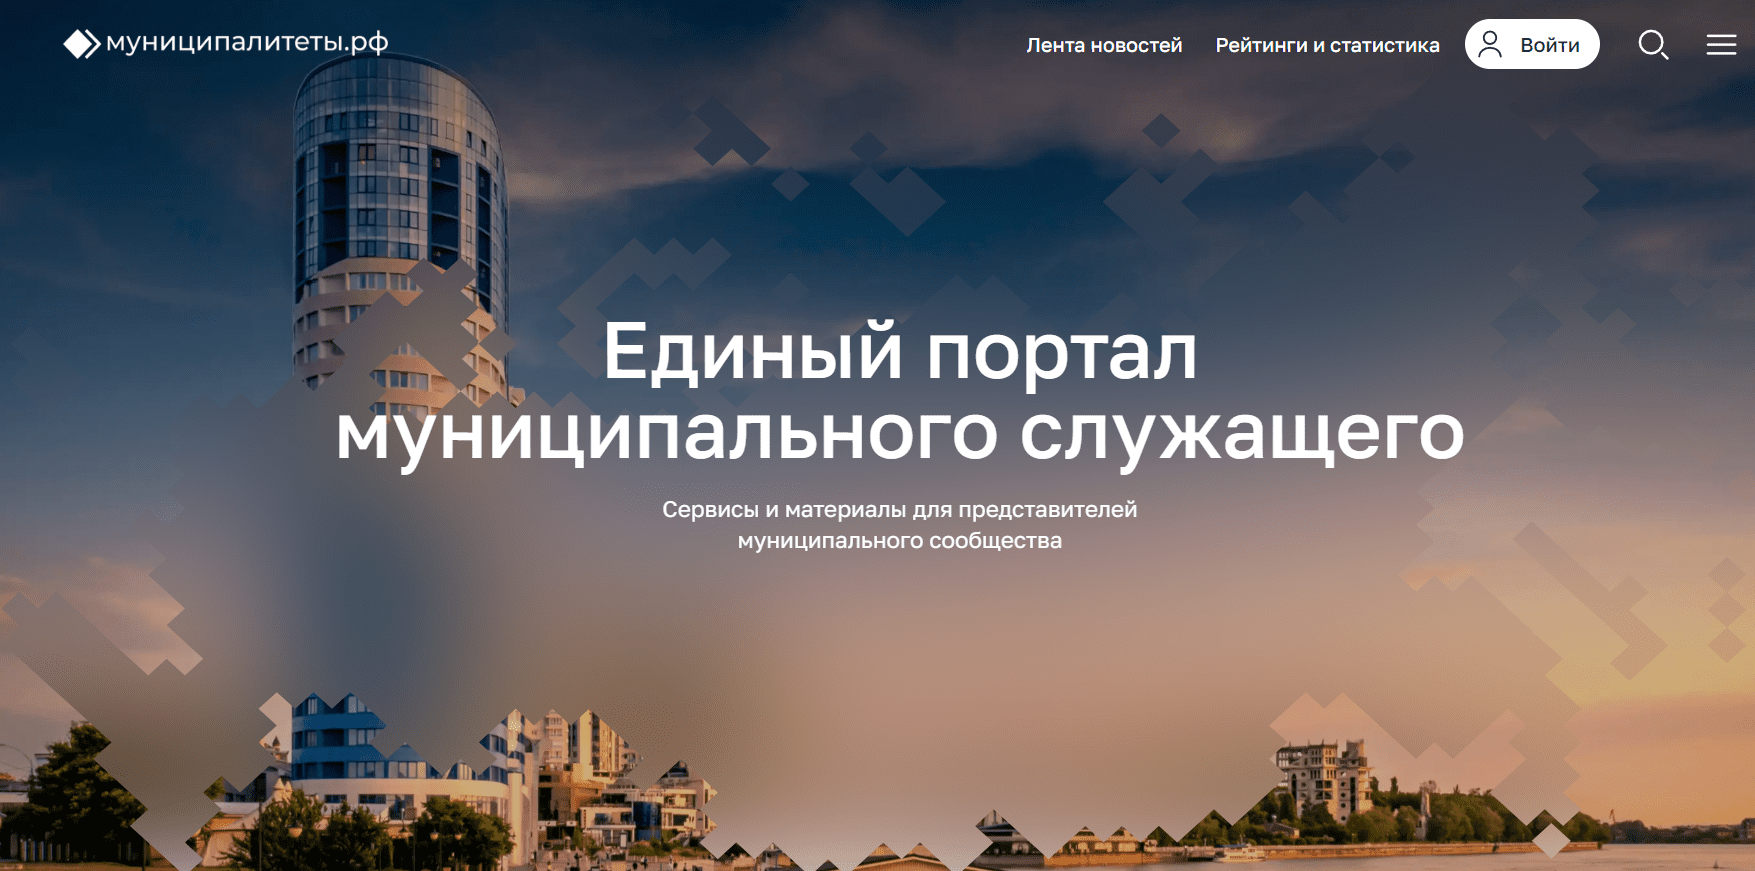 В России запущен сайт для муниципальных служащих